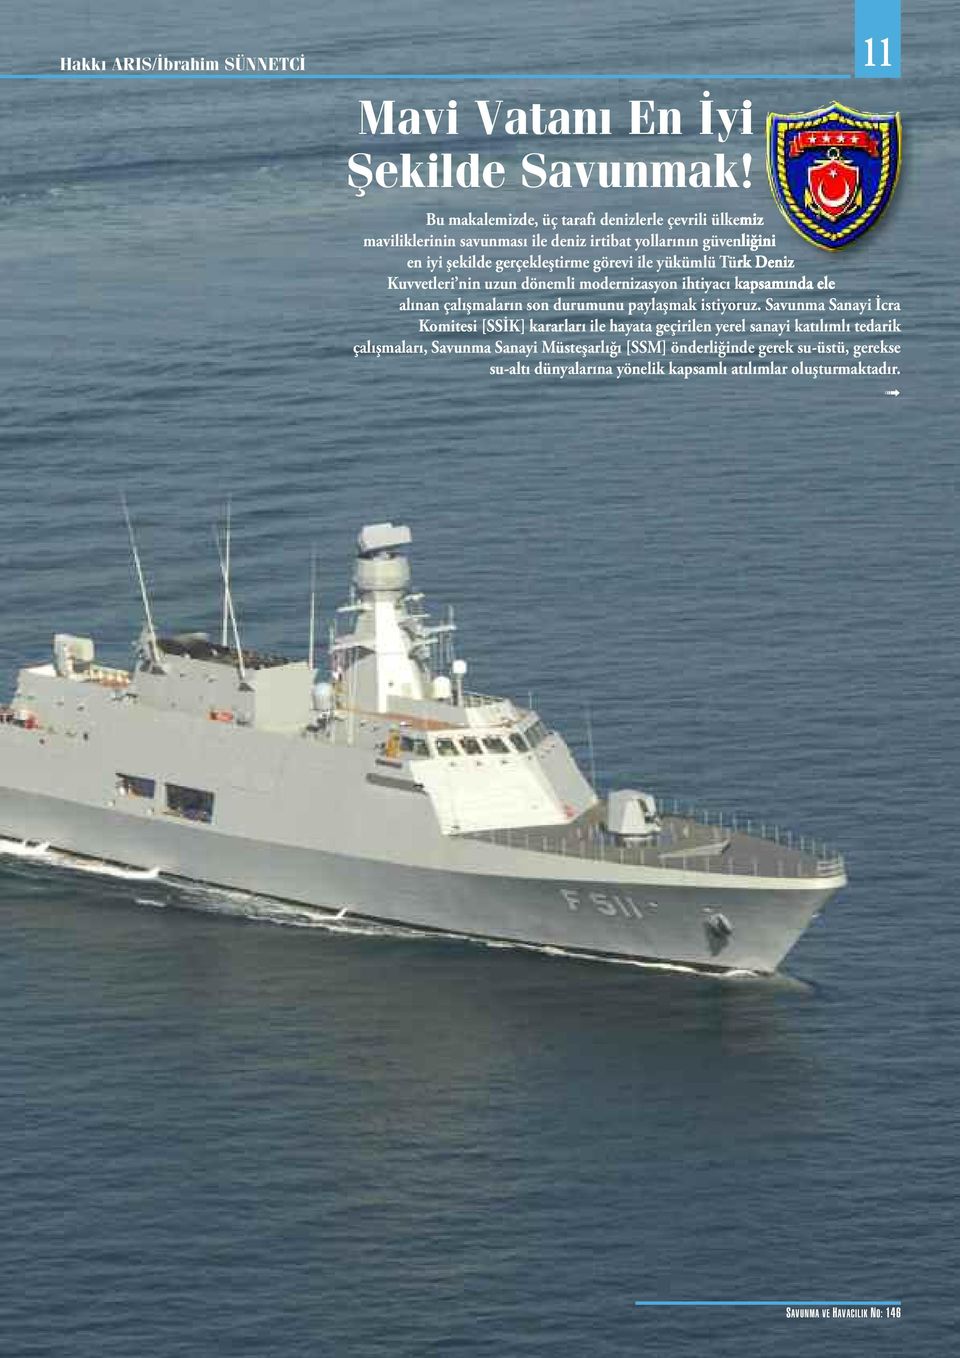 yükümlü Türk Deniz Kuvvetleri nin uzun dönemli modernizasyon ihtiyacı kapsamında ele alınan çalışmaların son durumunu paylaşmak istiyoruz.